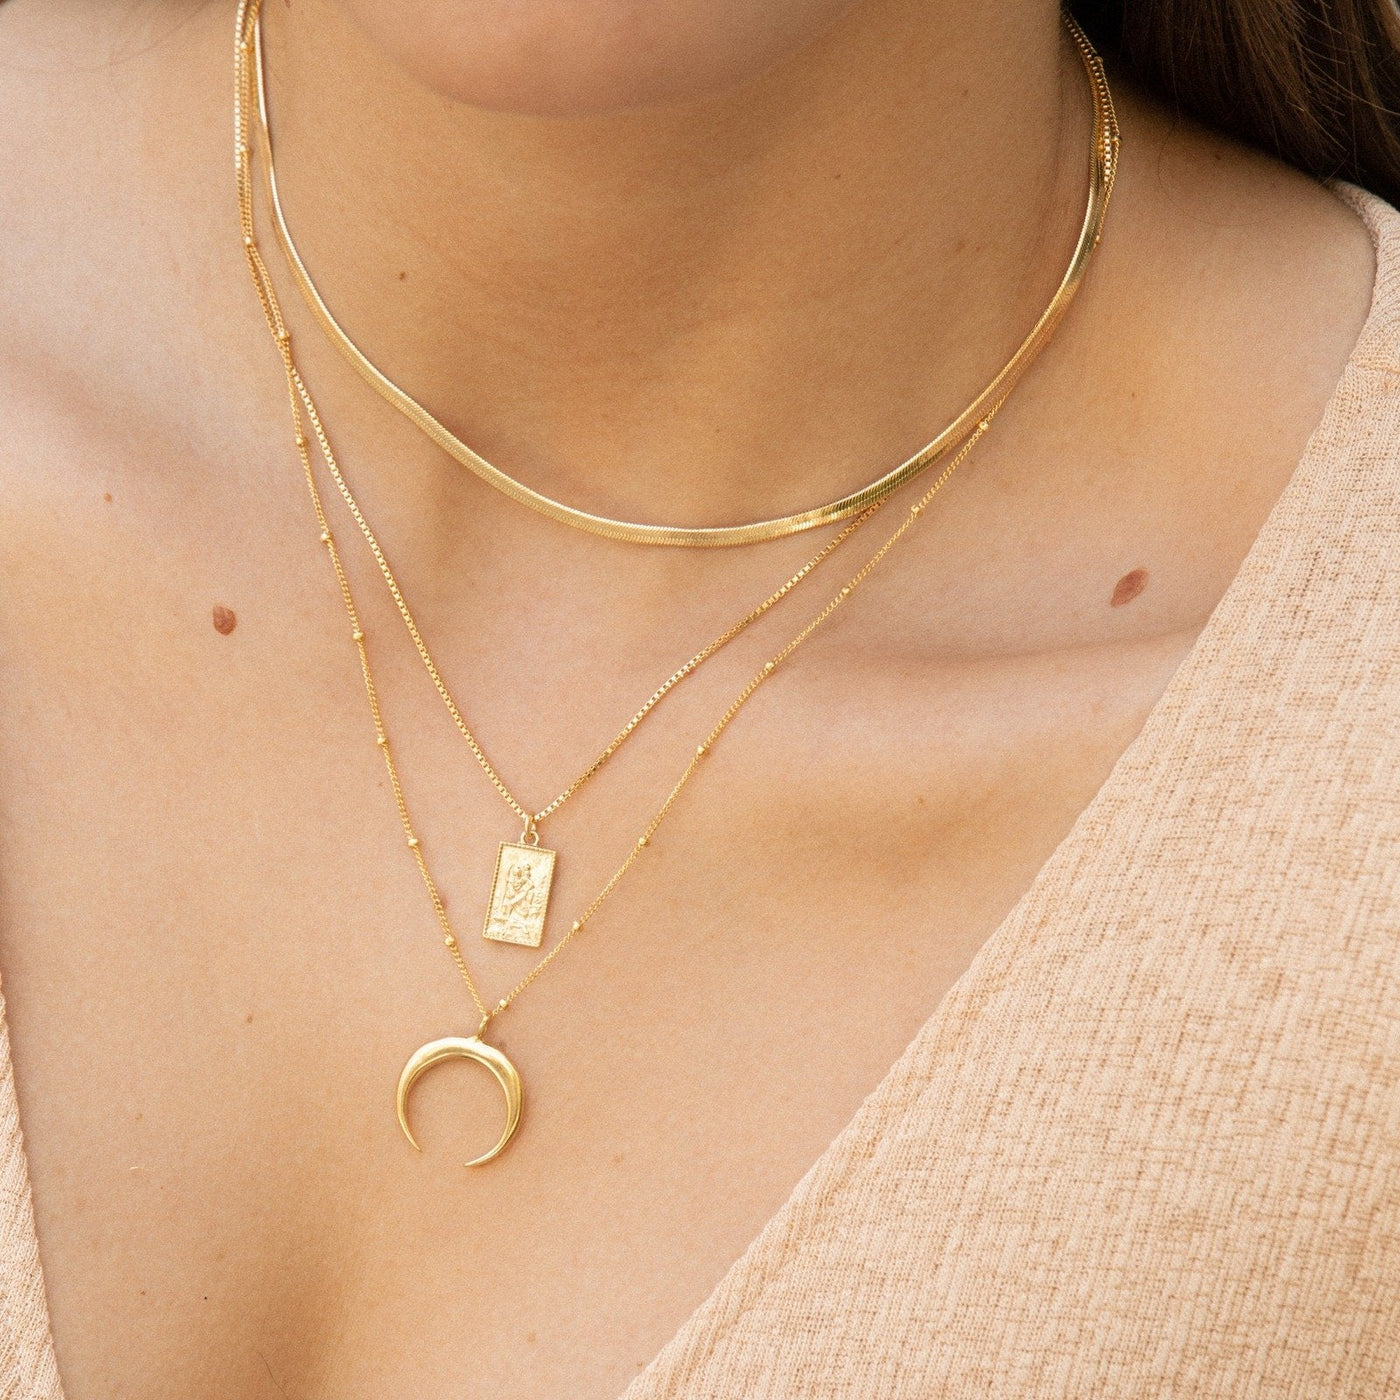 Tasiso 14K Gold Filled Herringbone Choker Necklace India | Ubuy